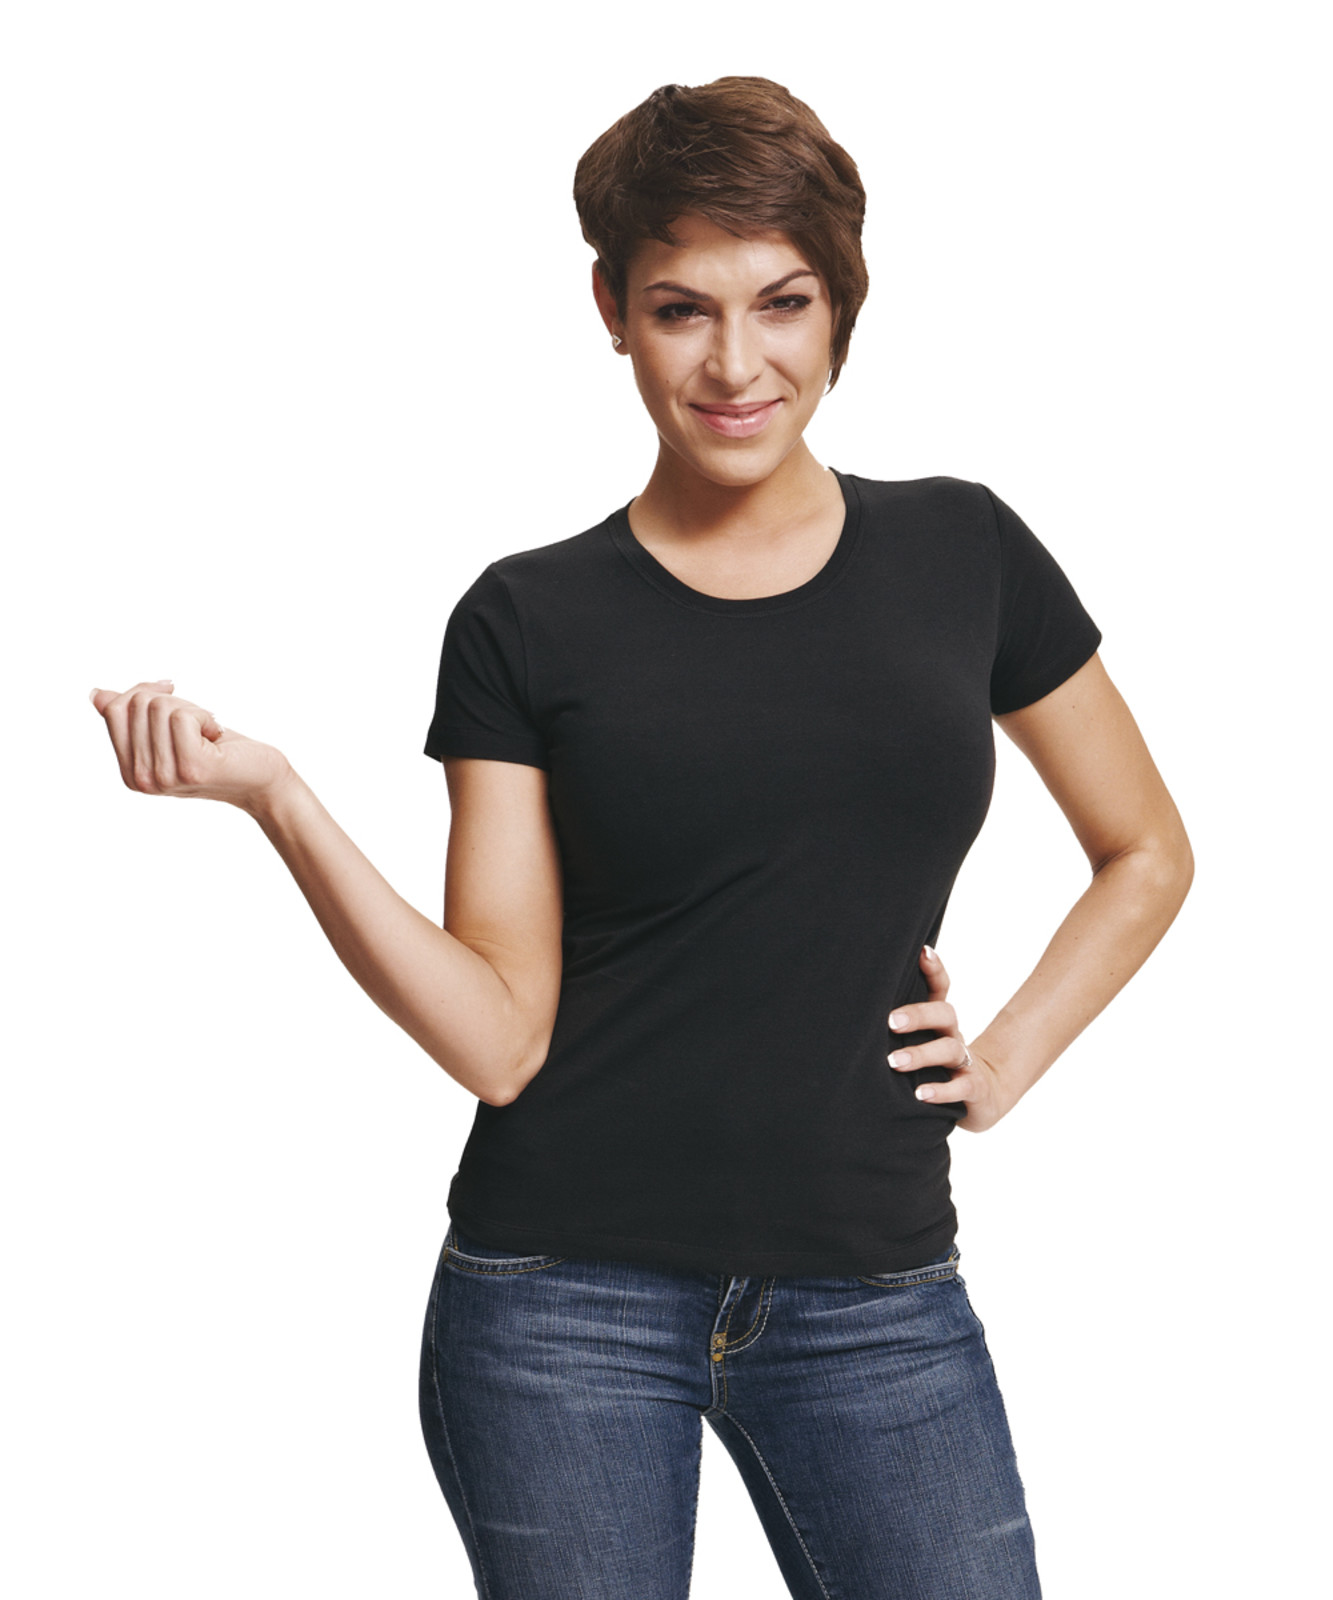 Dámske tričko s krátkym rukávom Surma Lady - veľkosť: L, farba: čierna